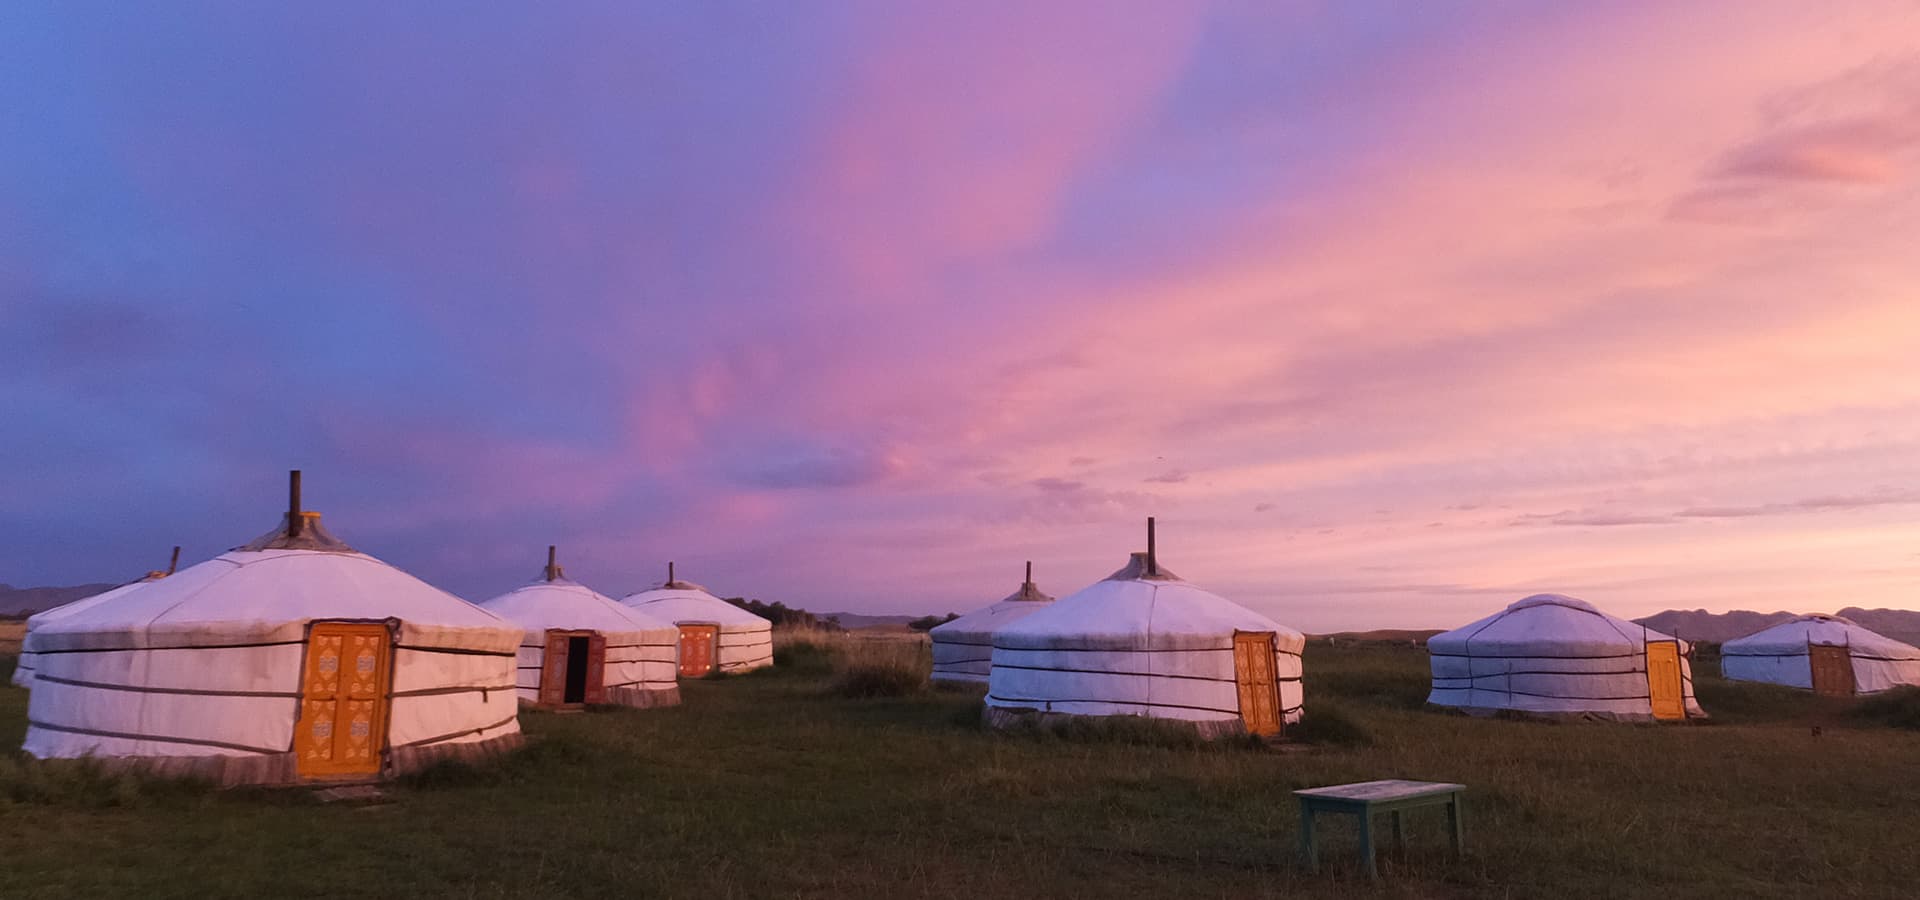 モンゴル 大草原のオフロード ツーリング 6日間 海外ツーリングの道祖神